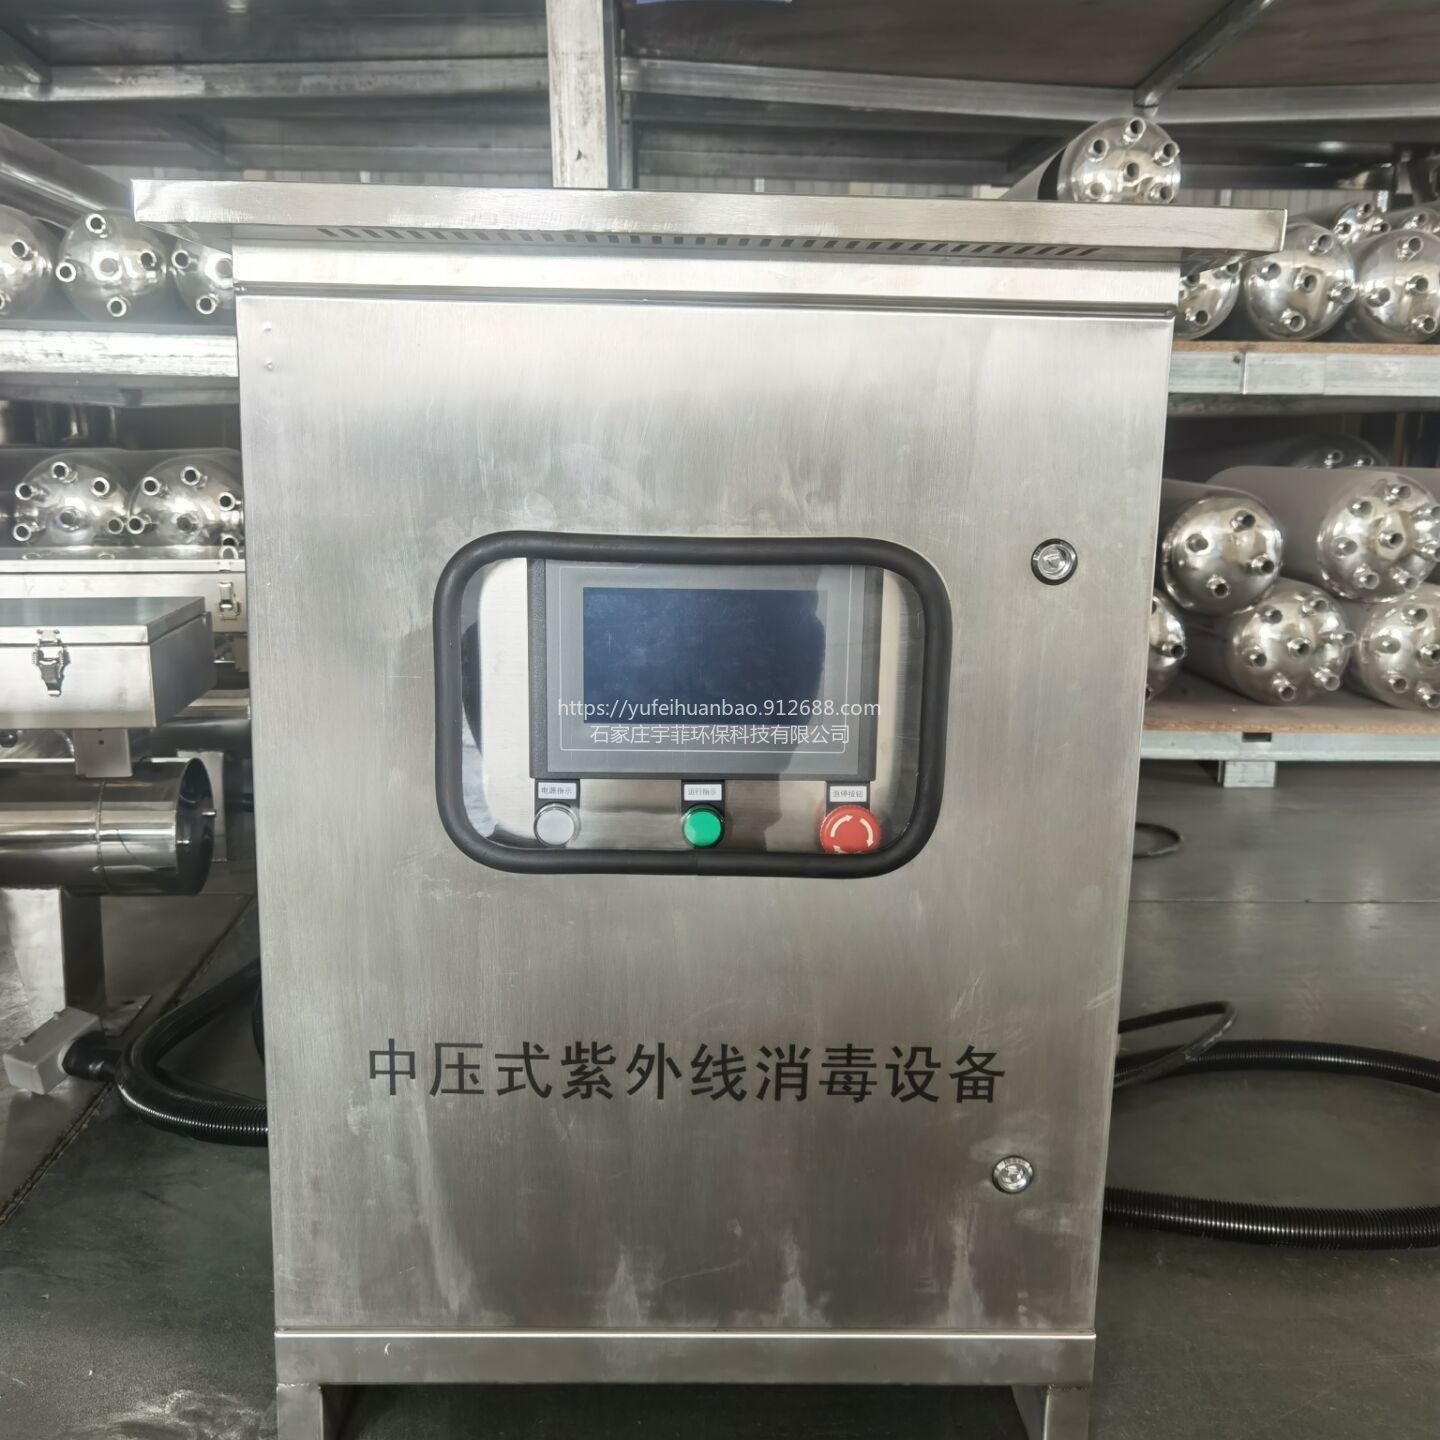 宇菲供应 水族馆用水杀菌设备宇菲  中压紫外线消毒器   TLZX32-30D  304食品级不锈钢